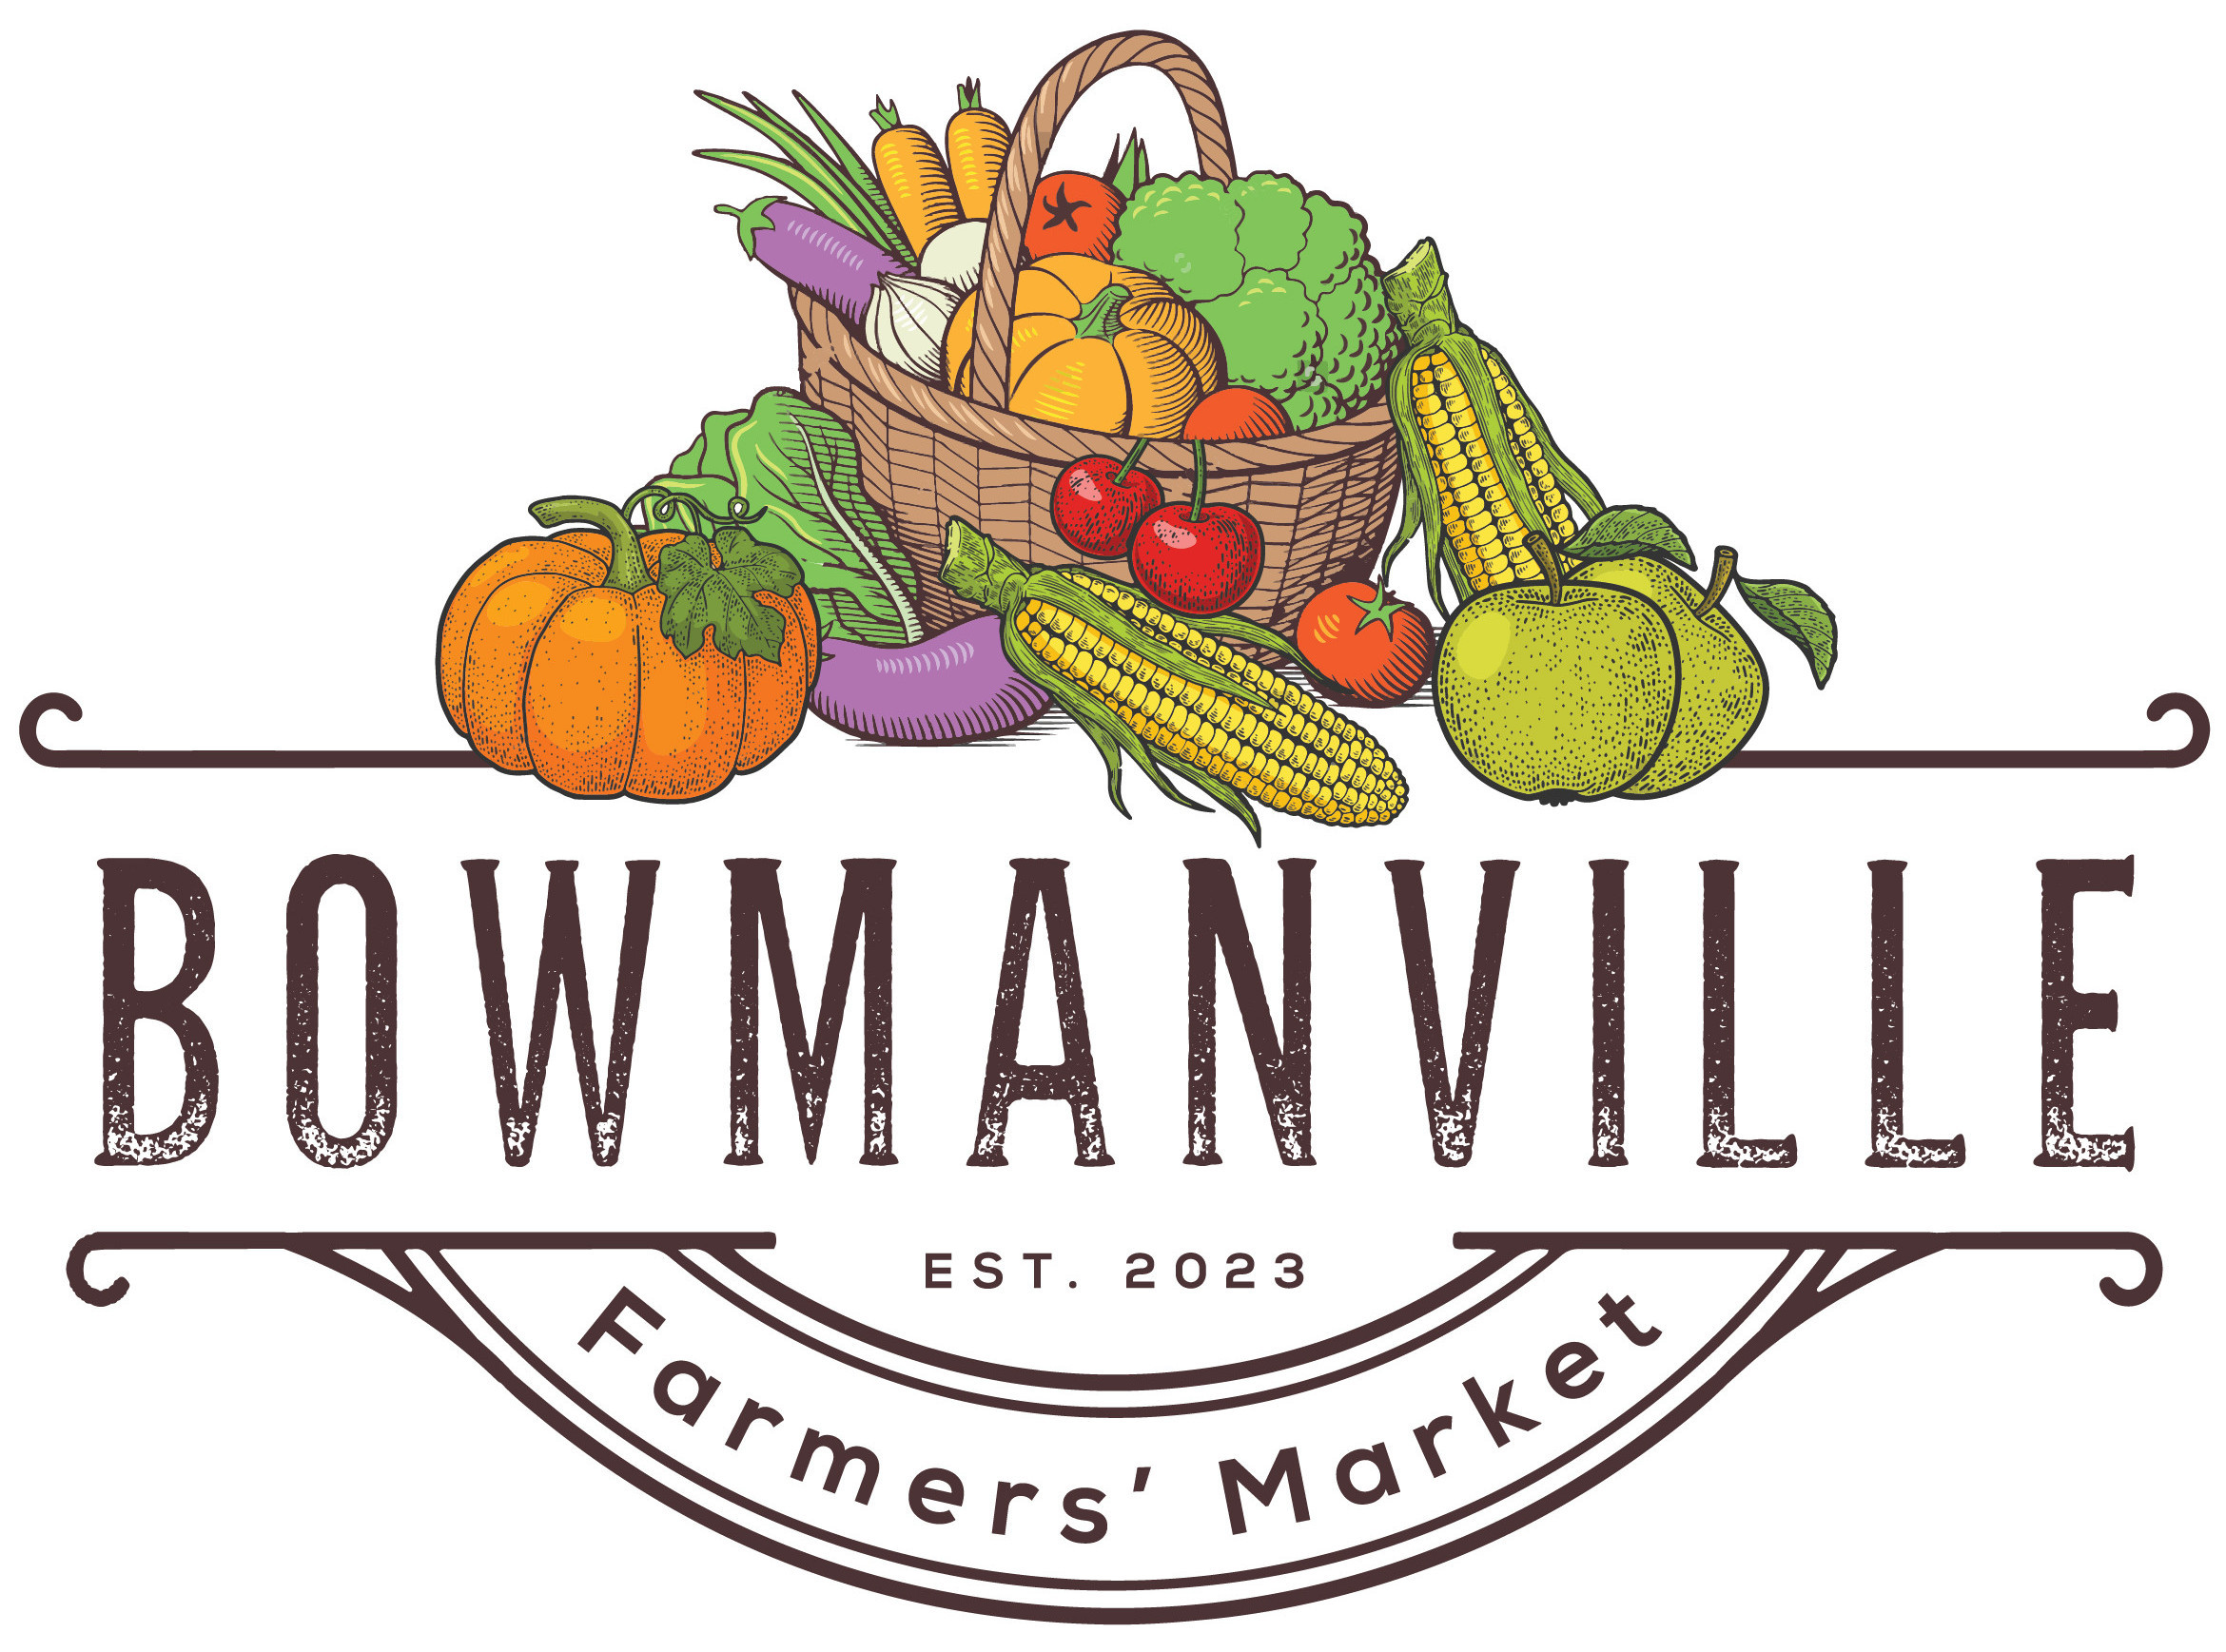 Bowmanville Farmers Market